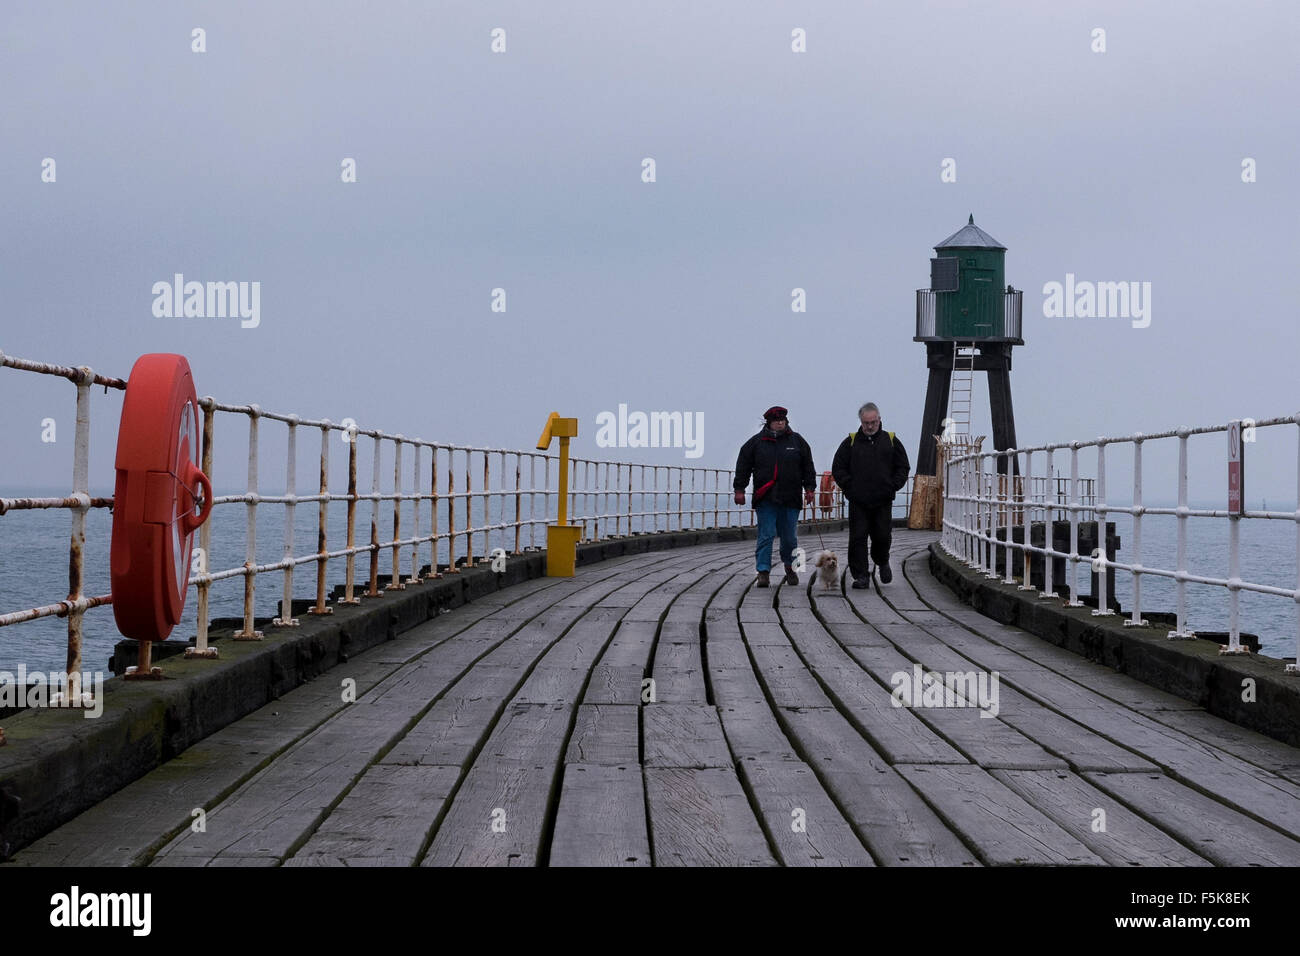 Coppia che cammina cane animale domestico sul molo ovest di Whitby, Inghilterra, Regno Unito - i toni grigi delle tavole di legno di decking, mare & cielo in vento freddo opaco clima autunnale alla costa. Foto Stock